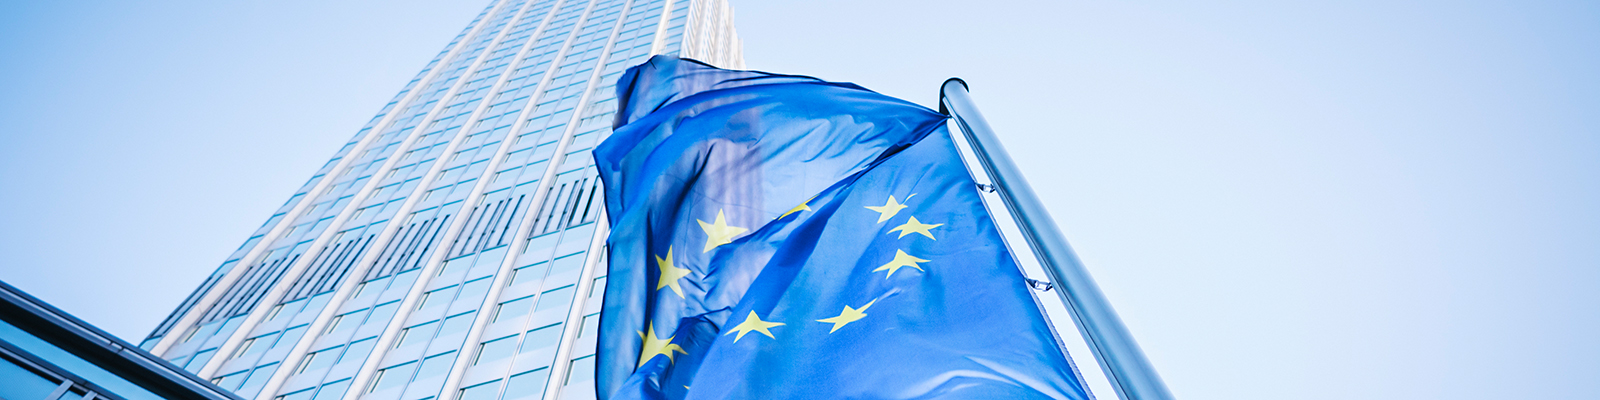 EU-Flagge vor der Europäischen Zentralbank für Europäische Wirtschaftspolitik; Quelle: iStock.com/instamatics